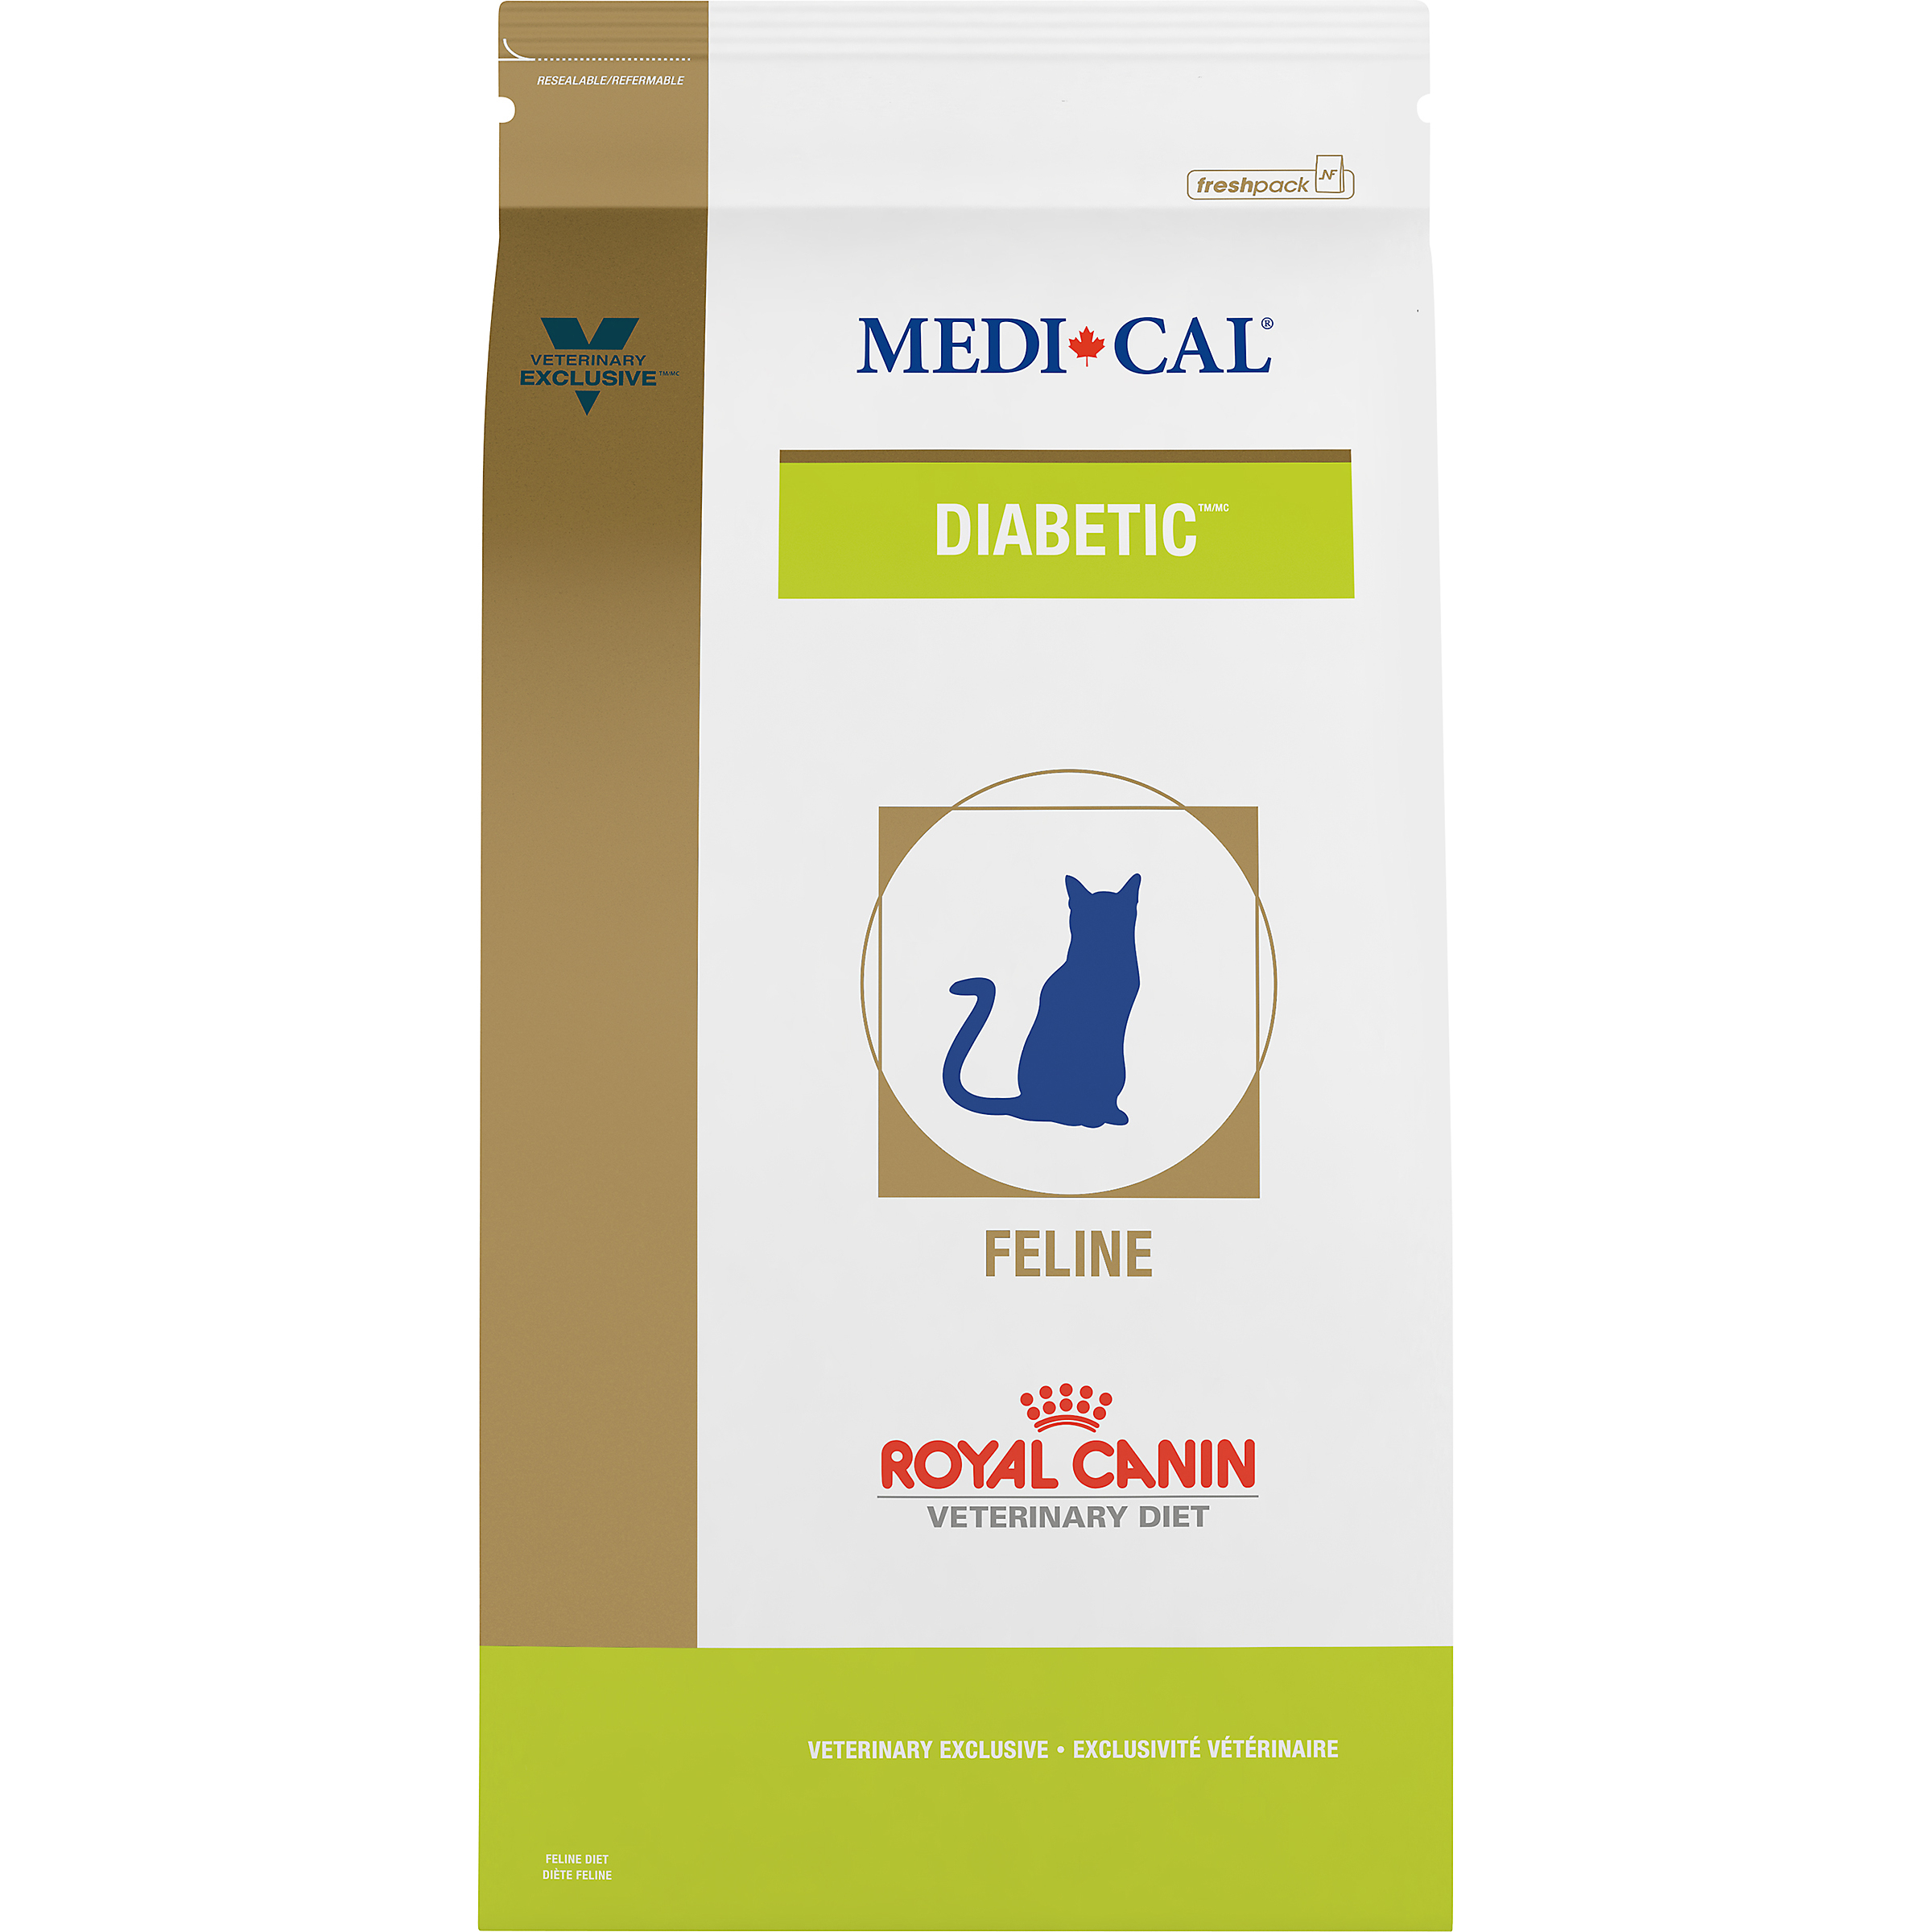 Royal Canin Diabetic Cat Food Canada